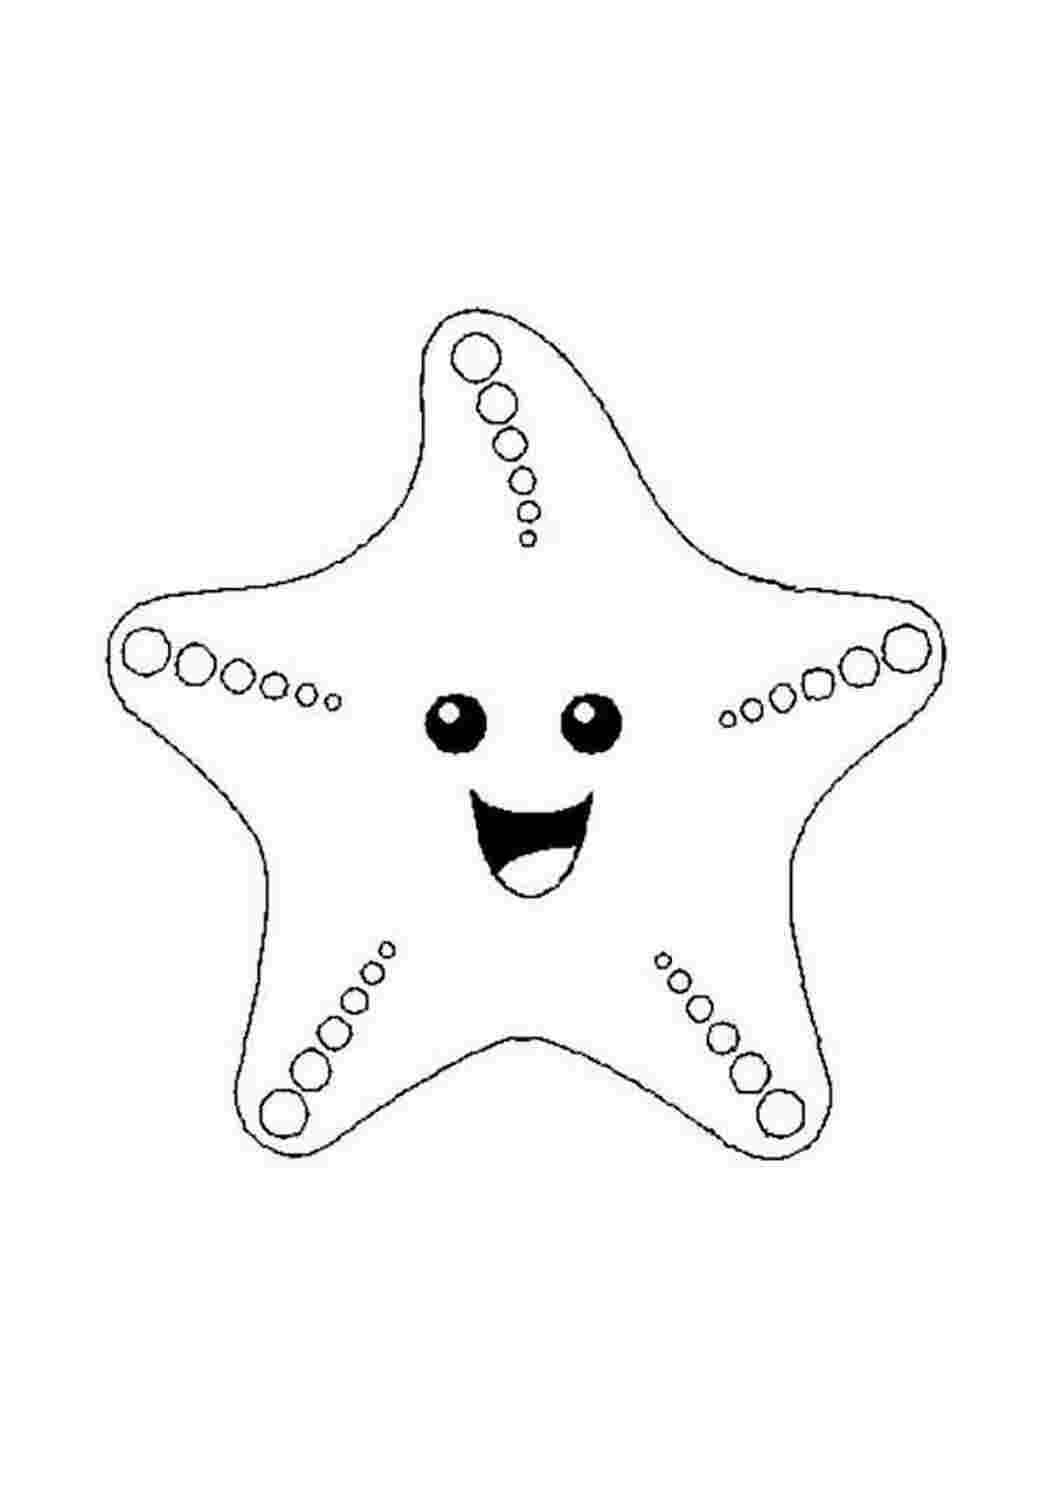 Раскраски Улыбка морской звезды. Распечатать раскраски на сайте. Улыбка морской звезды. Бесплатно найти раскраску.